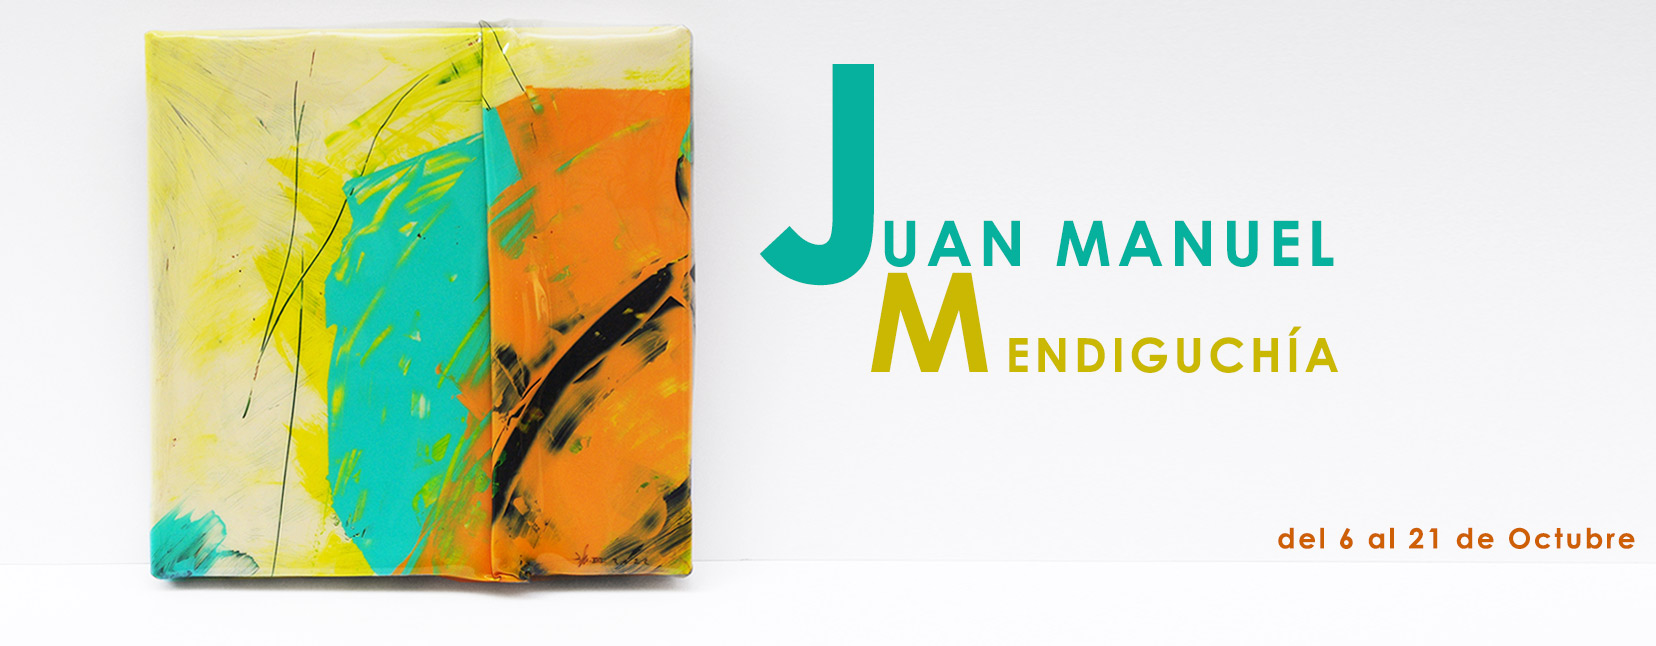 Juan Manuel Mendiguchía